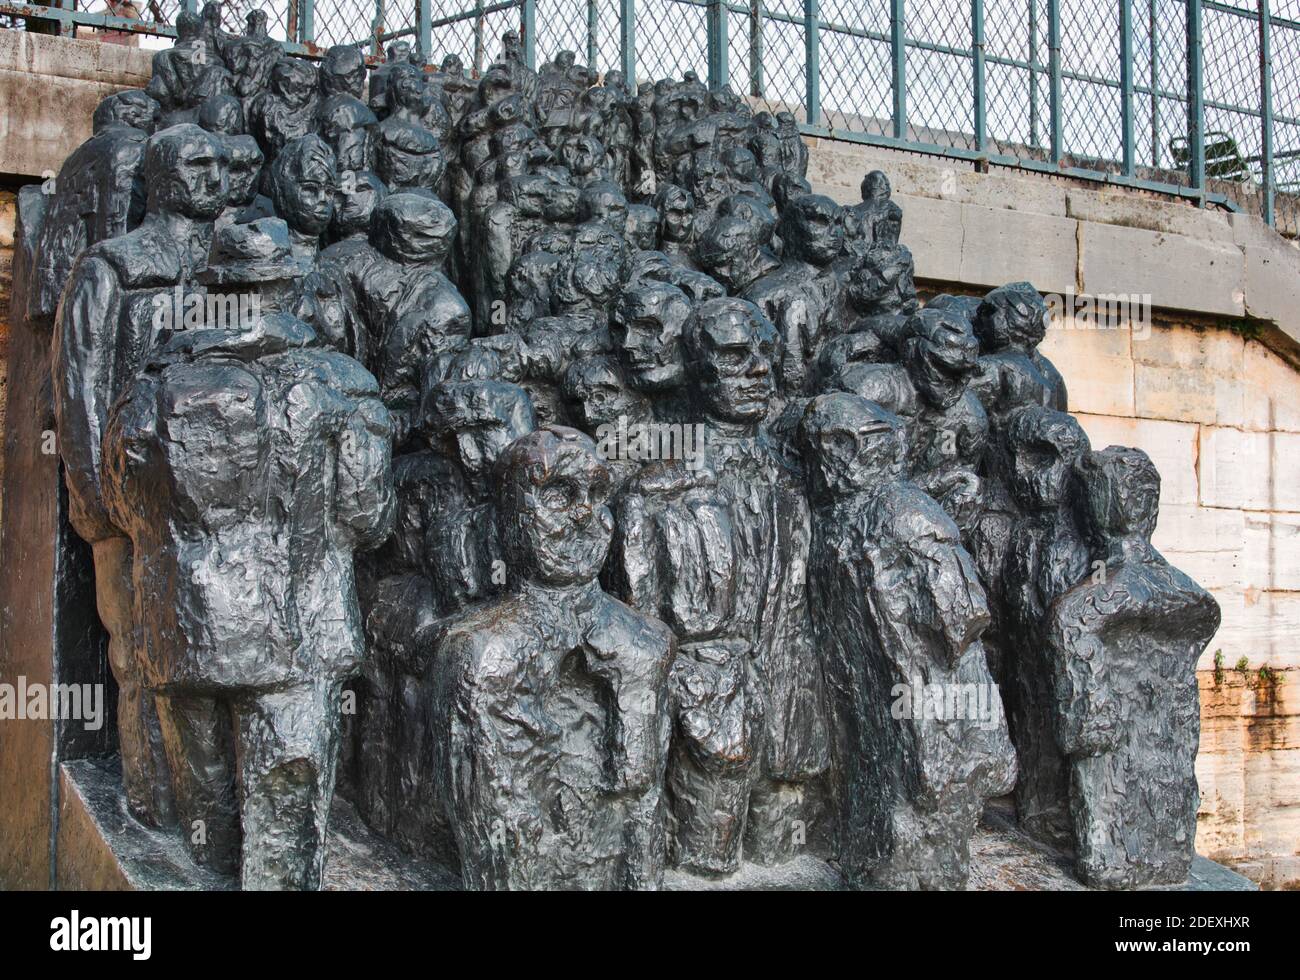 1963-67 bronze sculpture La Foule (The Crowd) by British Sculptor Raymond Mason, Jardin des Tuileries, Paris France Stock Photo